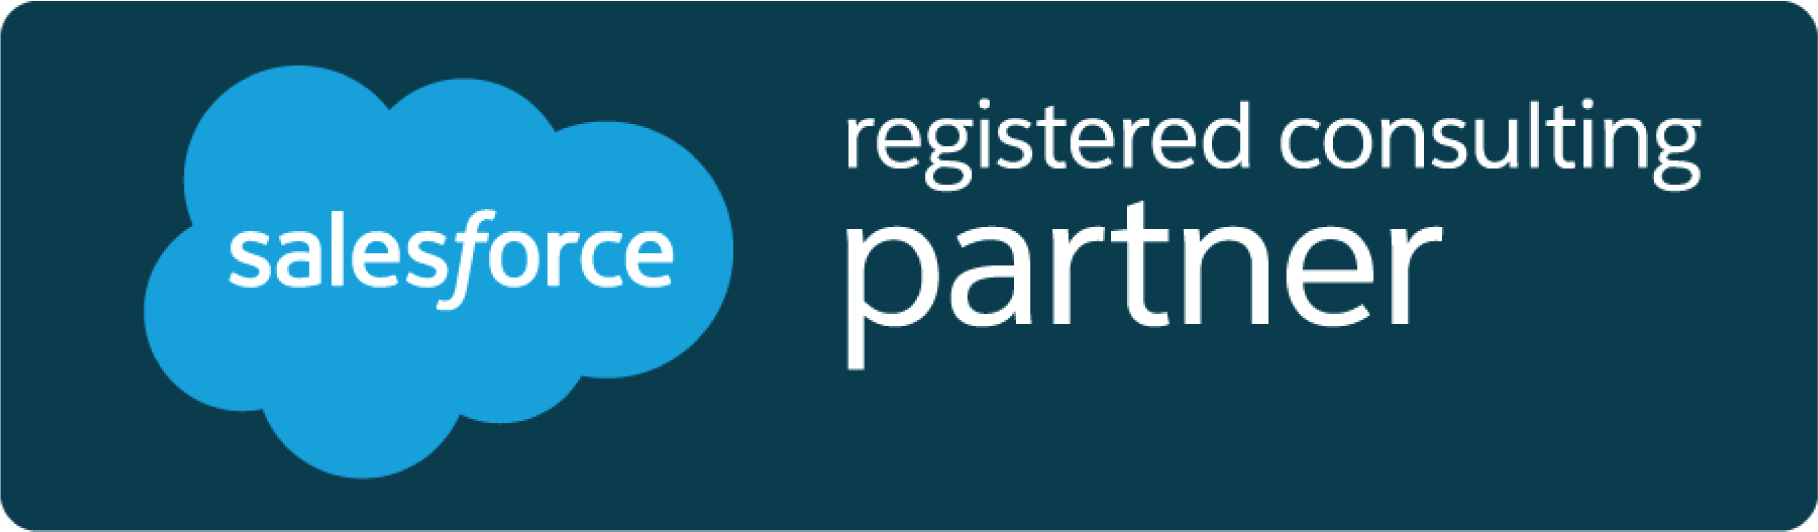 Salesforce registered consulting partner logo.